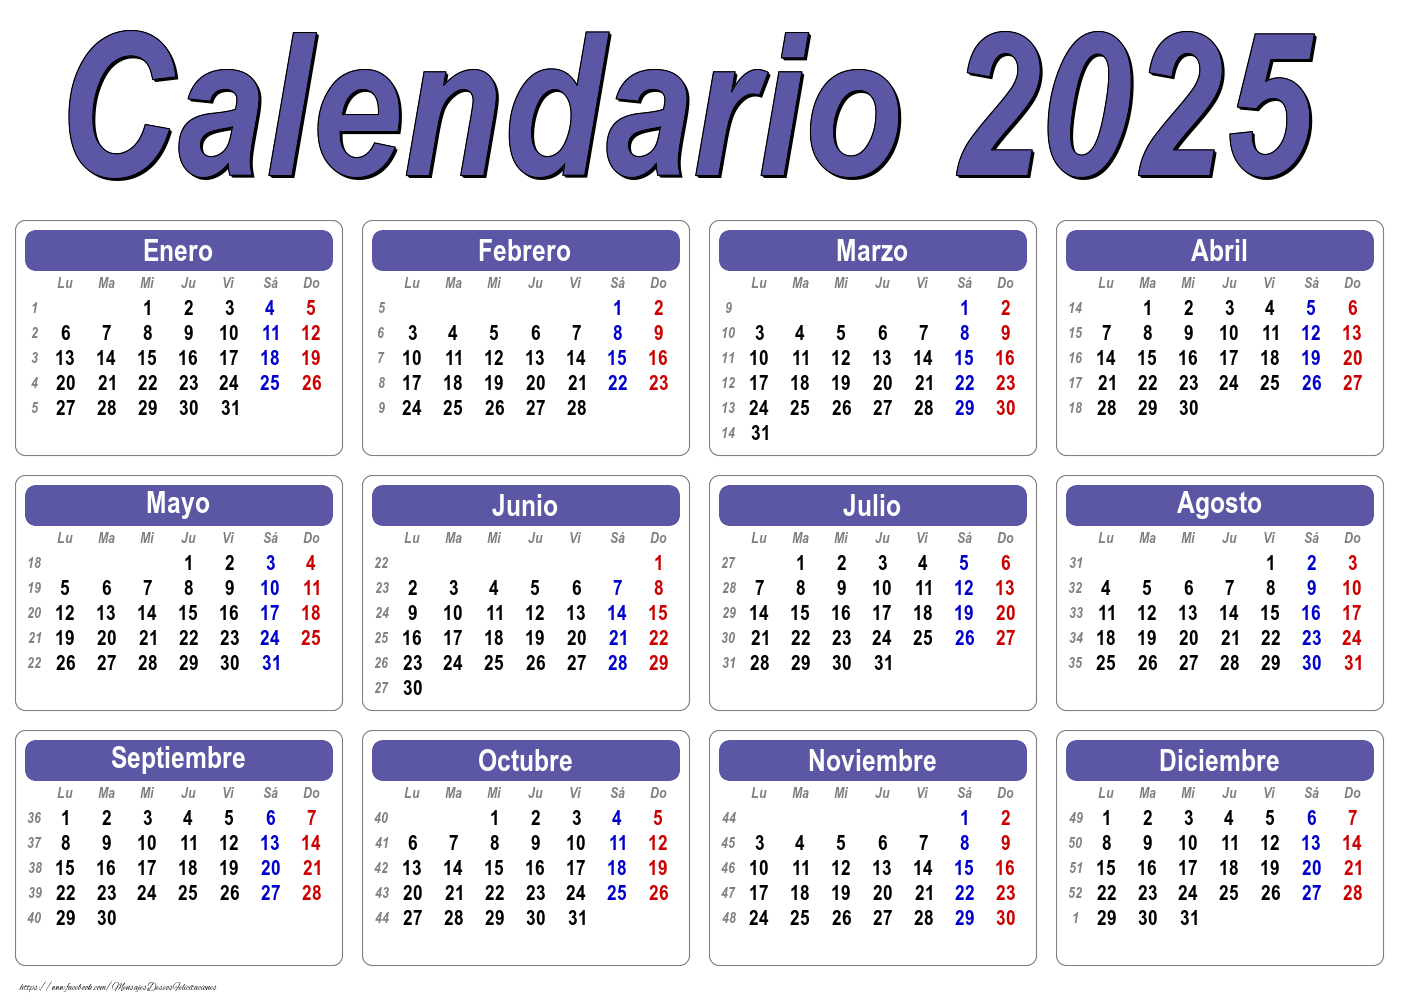 Calendario 2025 - Clásico - Modelo 001